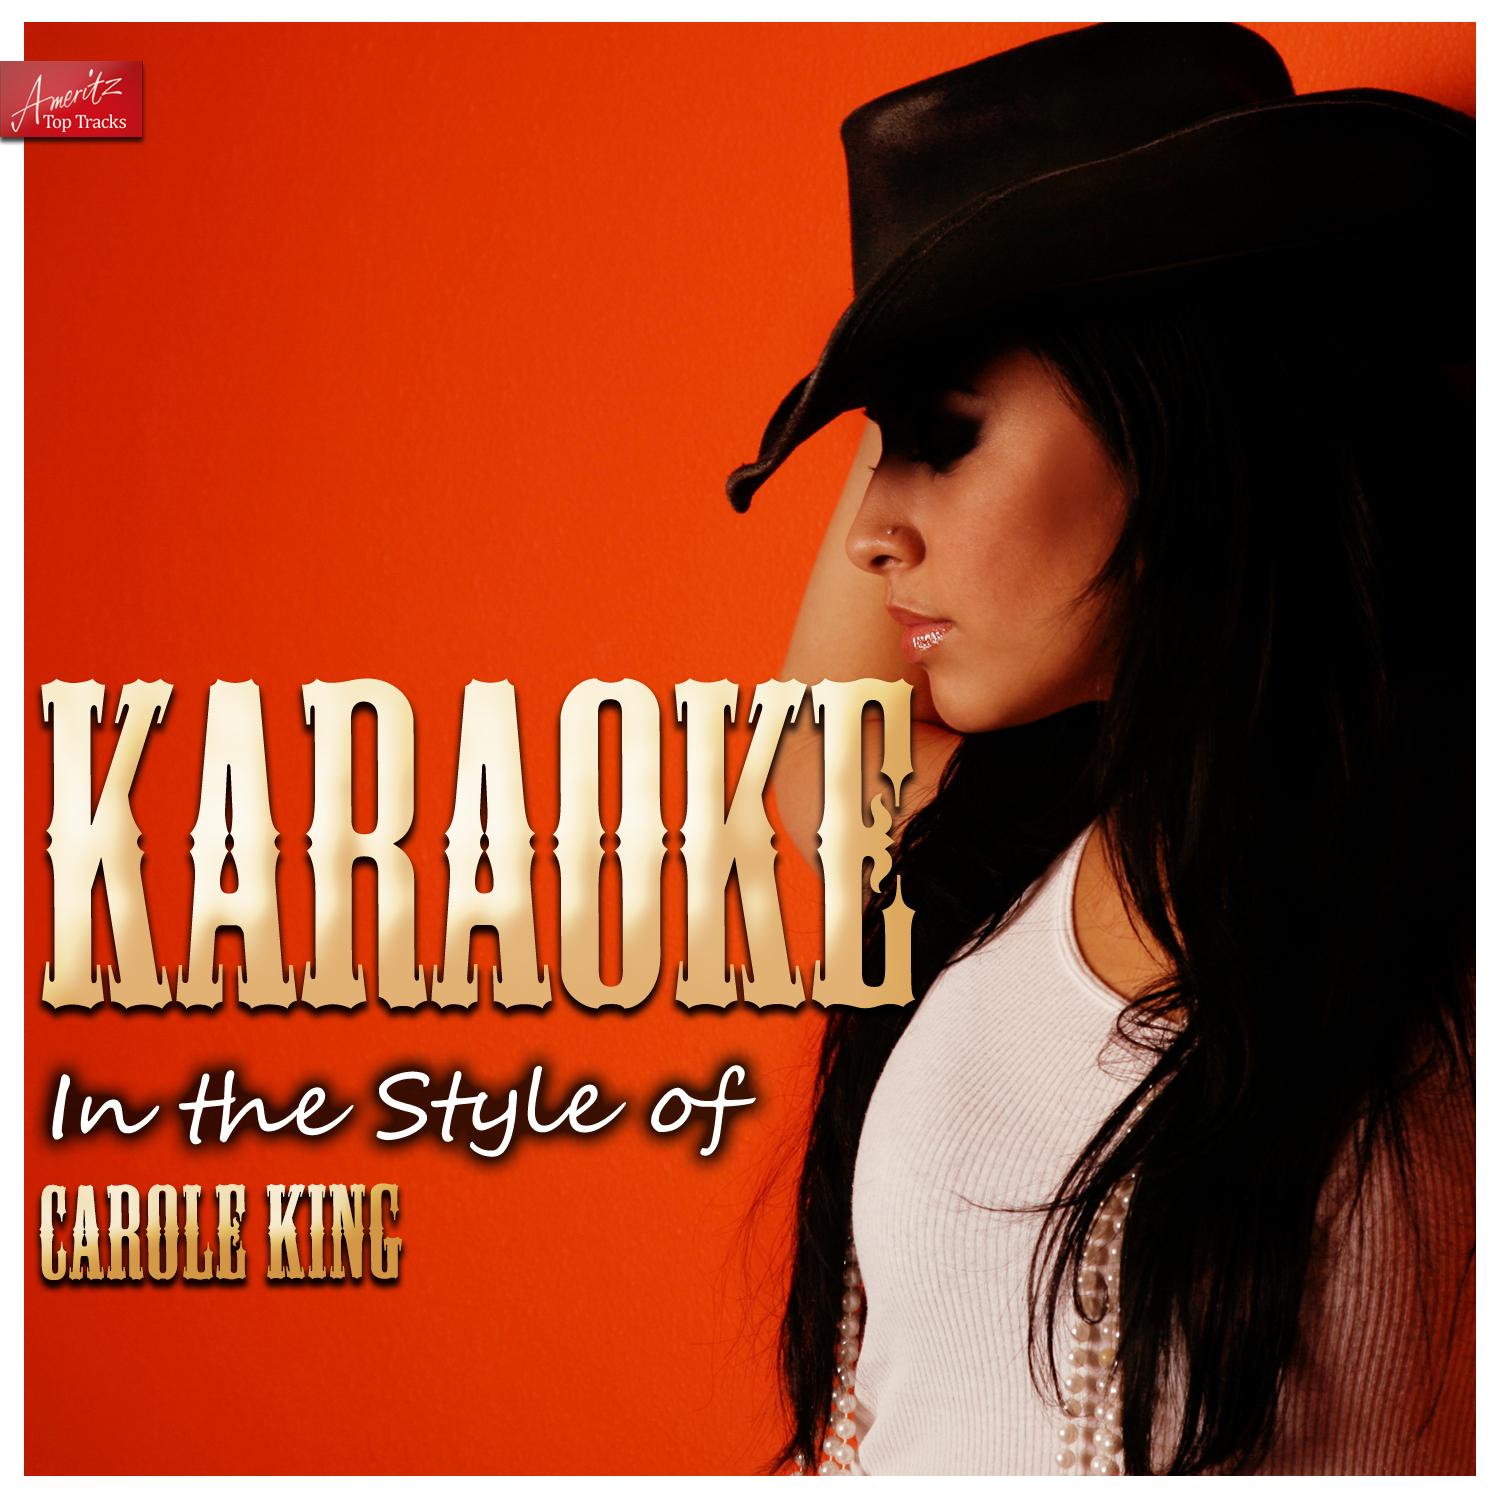 Jazzman (In the Style of Carole King) [Karaoke Version]